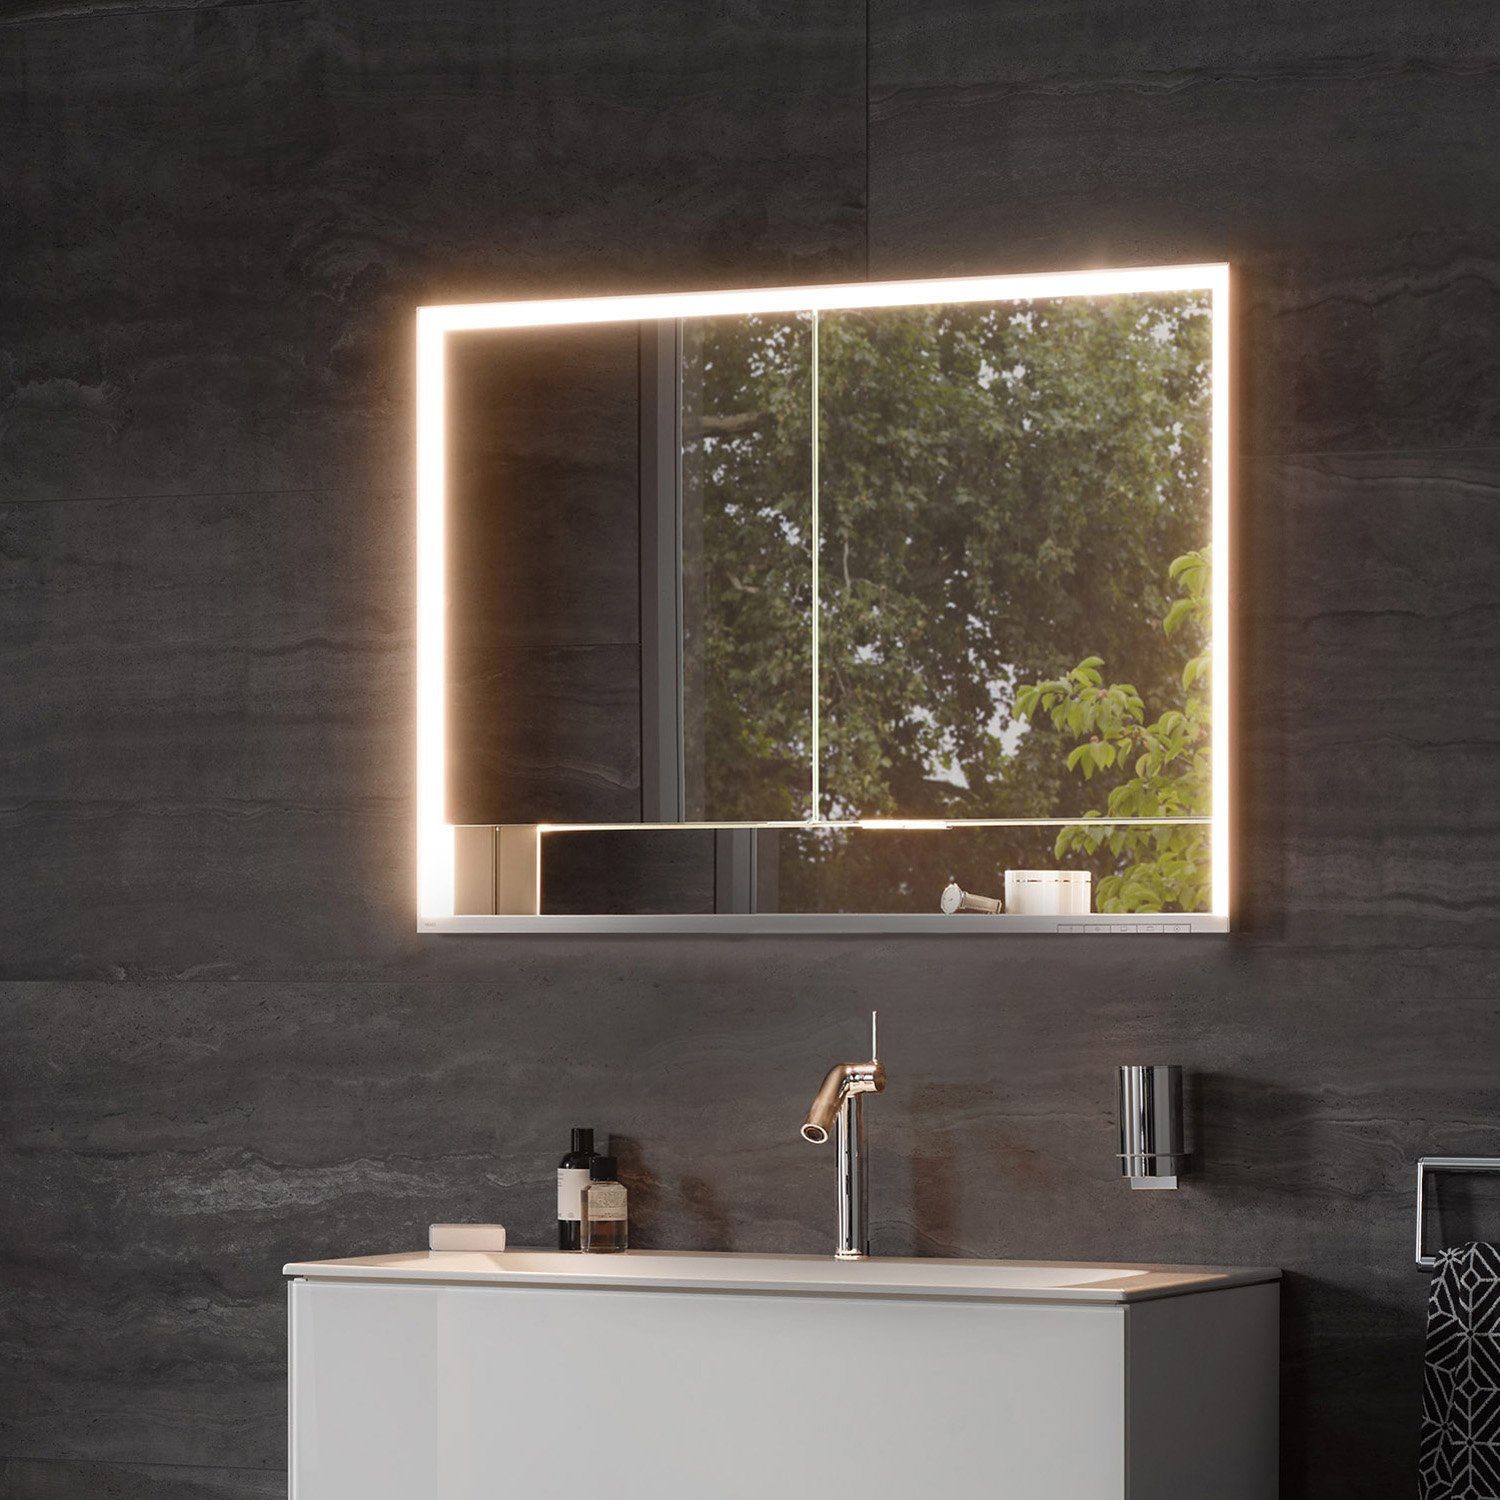 Keuco Spiegelschrank »Royal Lumos« (Badezimmerspiegelschrank mit  Beleuchtung LED), Unterputz-Einbau, mit Steckdose, dimmbar, einstellbare  Lichtfarbe, Aluminium-Korpus, 2-türig, 80 cm breit online kaufen | OTTO